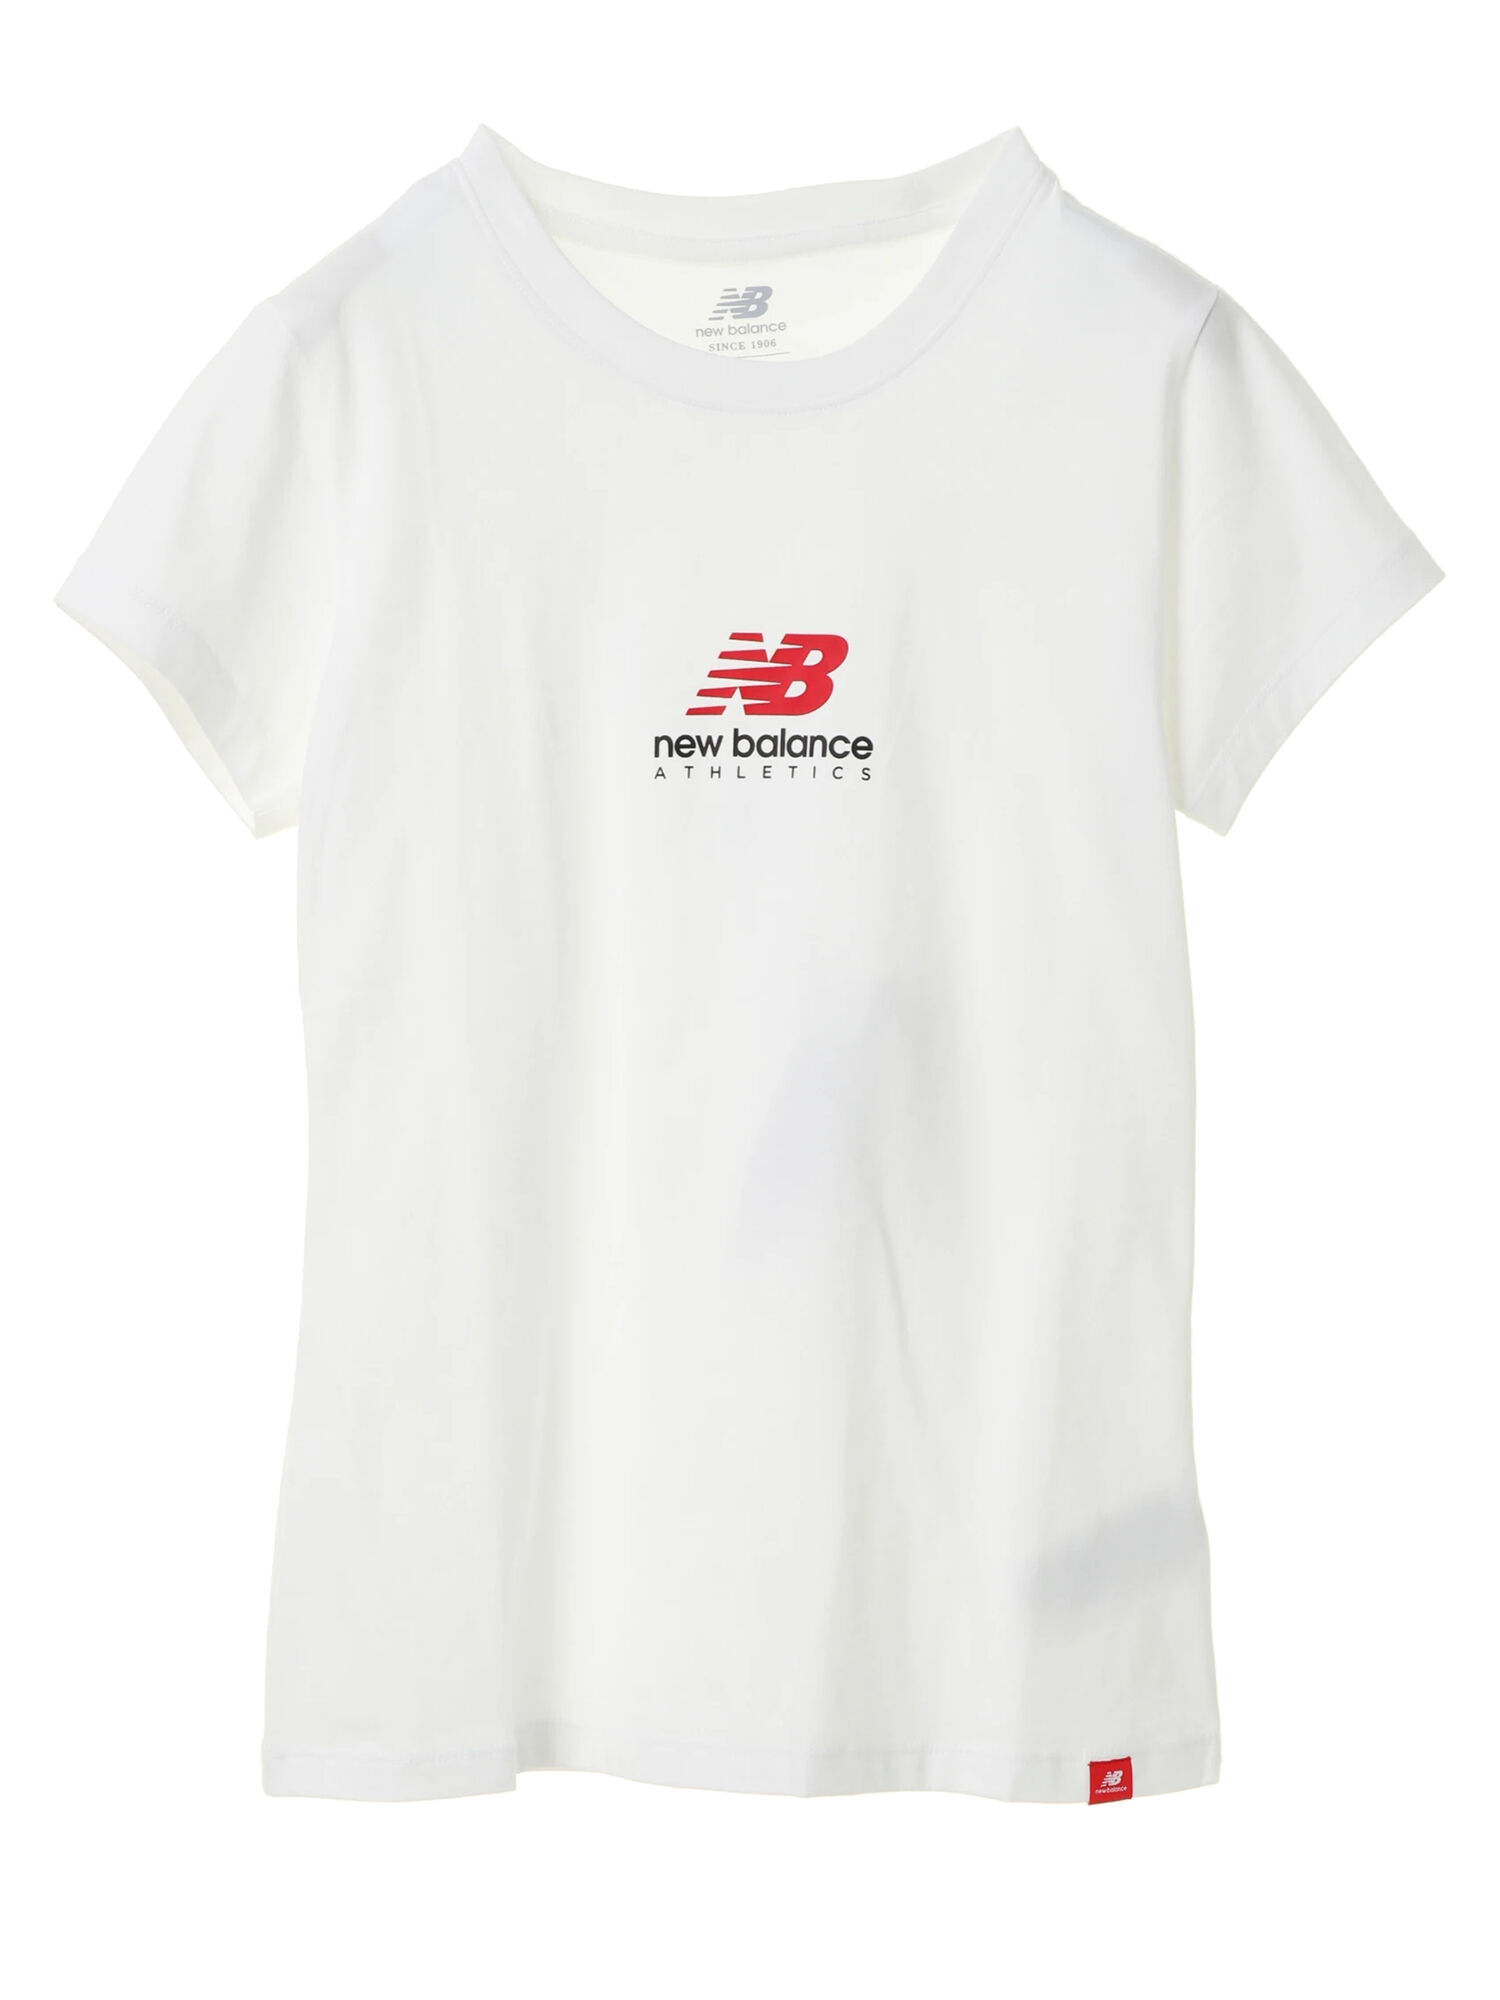 【6,000円(税込)以上のお買物で全国送料無料。】【New Balance】エッセンシャルズTシャツ